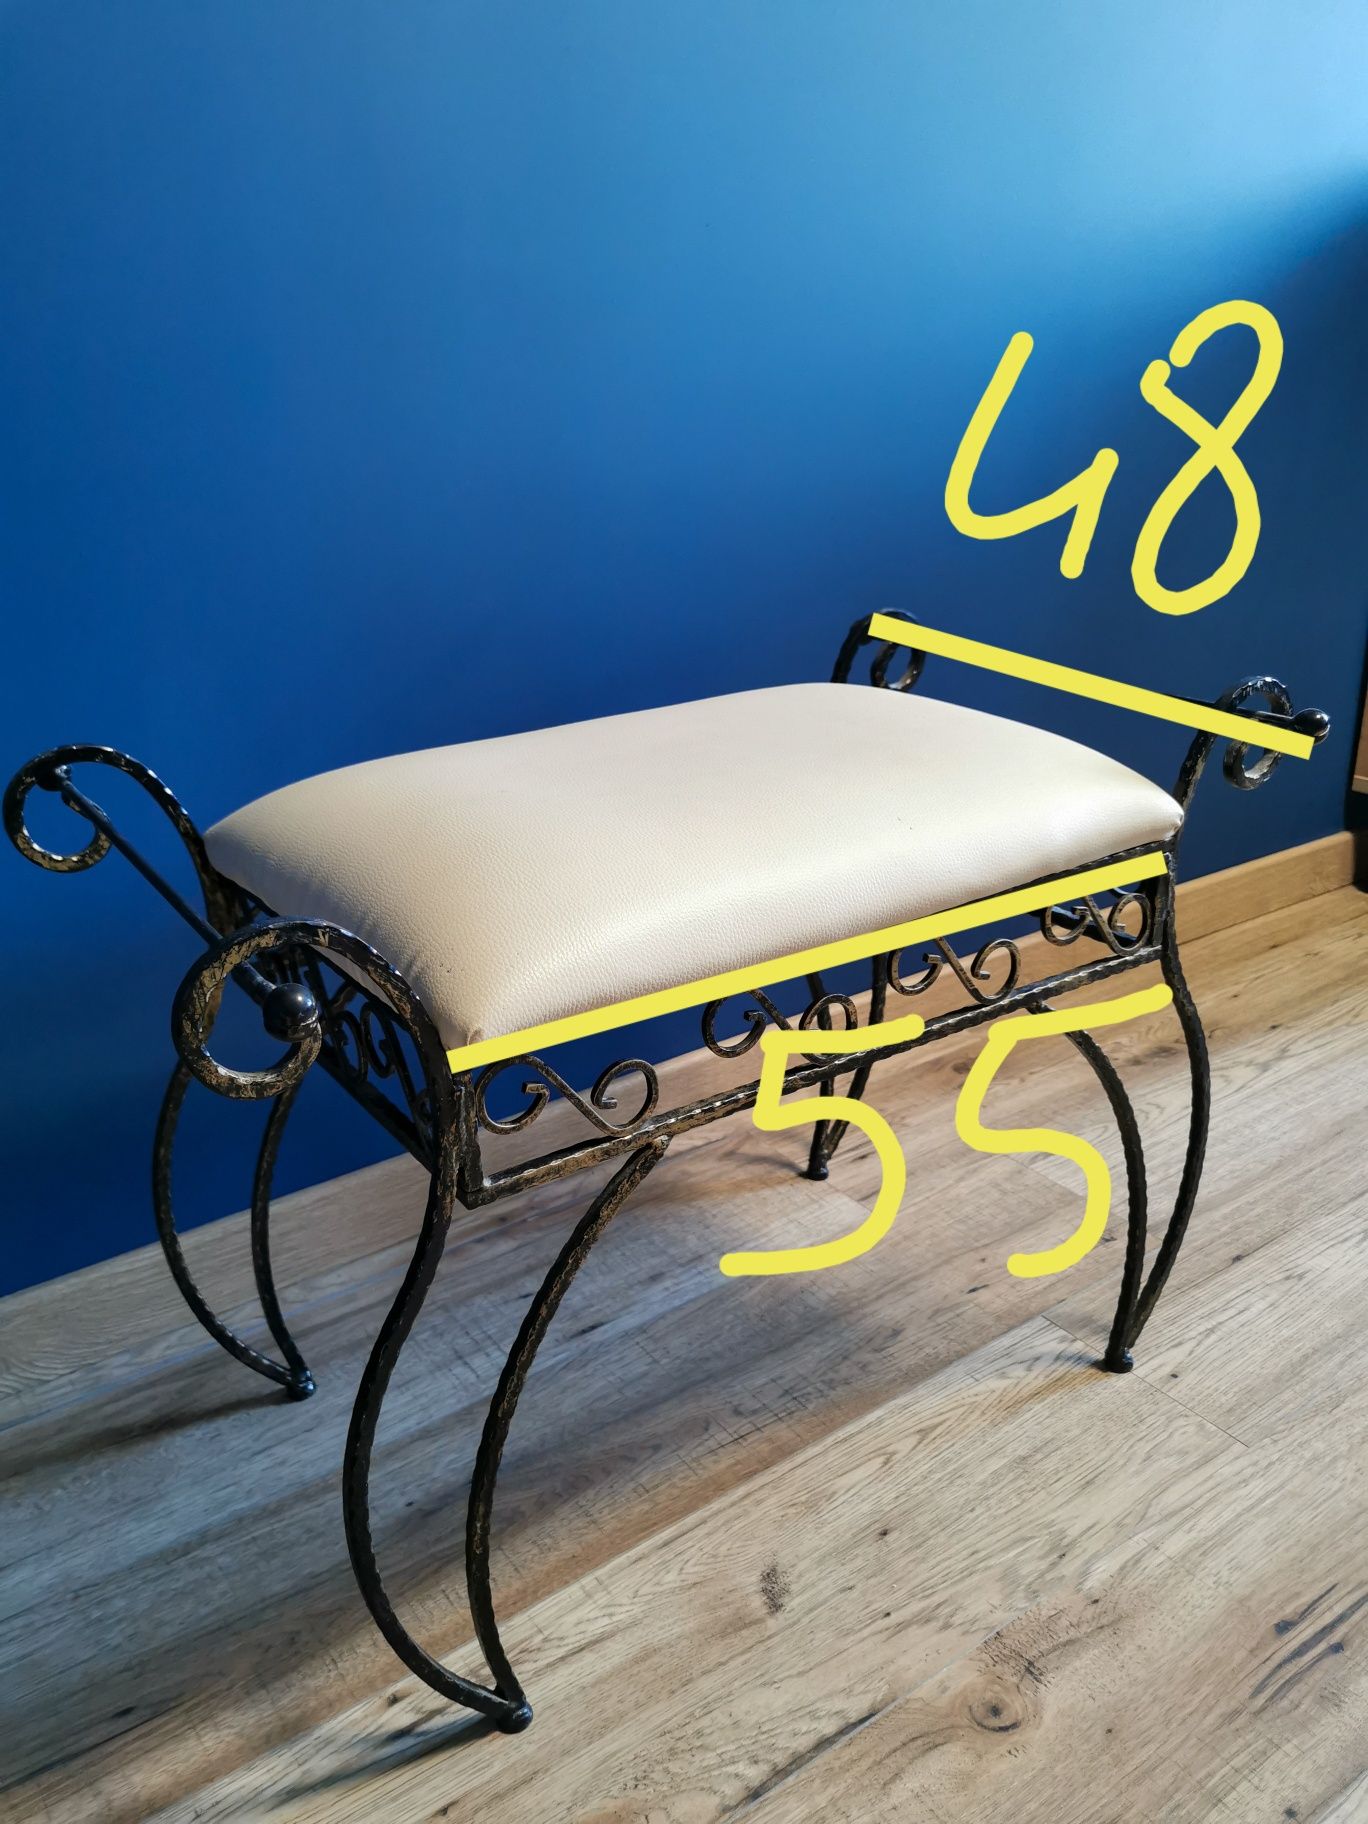 Krzesło/pufa i stojak na parasole (możliwość zakupu jednej rzeczy)